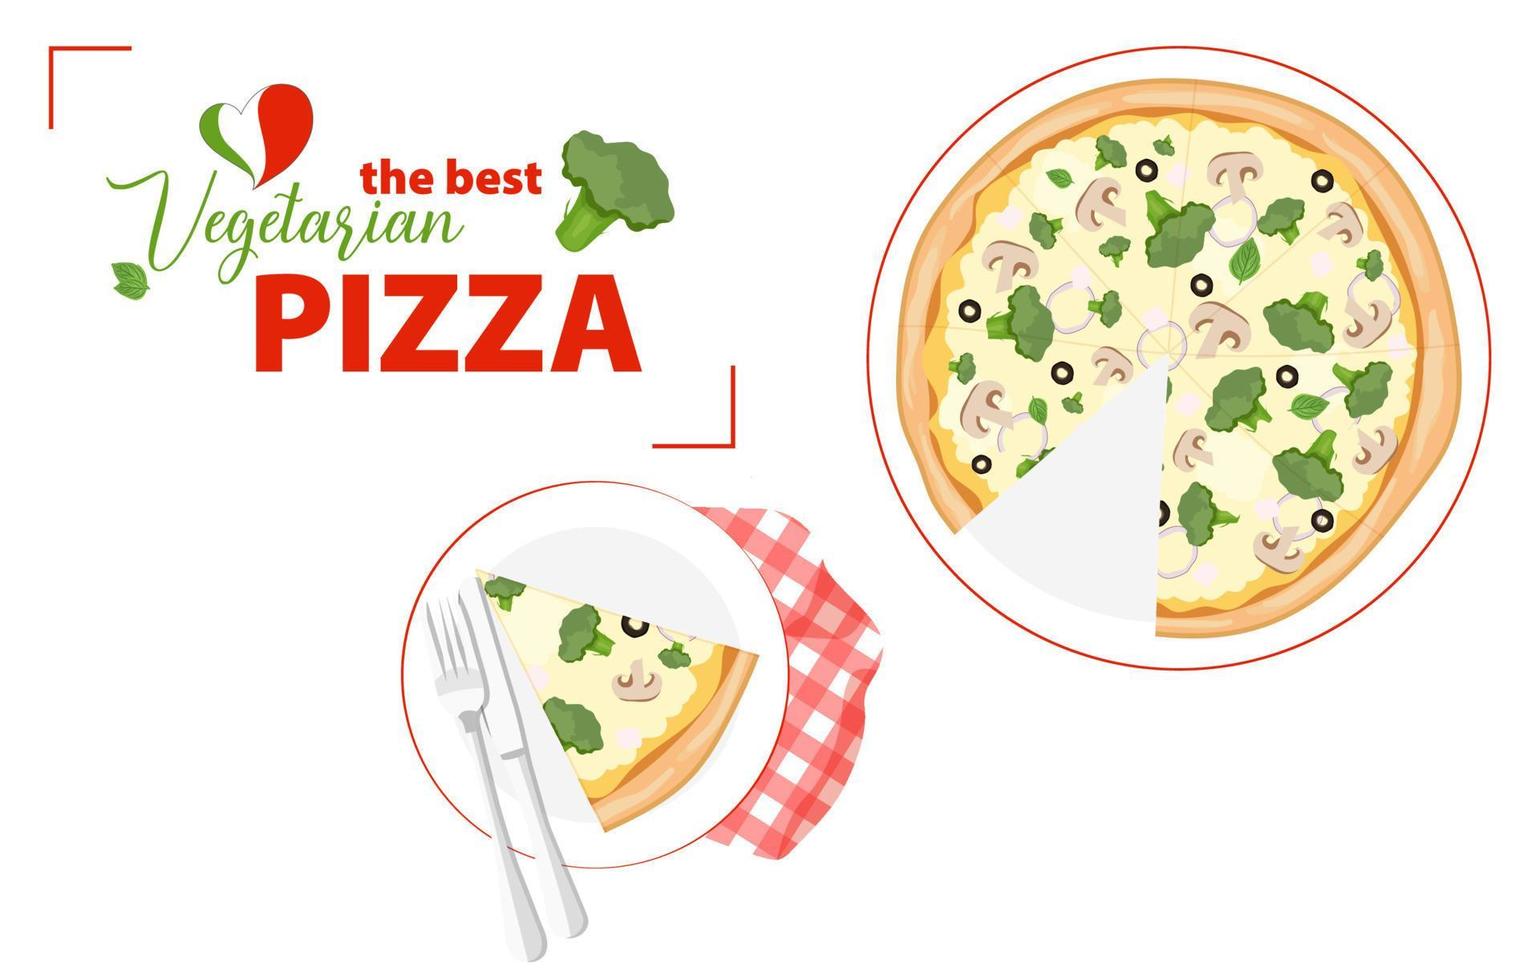 pizza végétarienne aux champignons, brocoli et olives. morceau de pizza triangle sur l'assiette et une serviette à carreaux rouge. vue de dessus. prendre de la restauration rapide traditionnelle. illustration vectorielle plane vecteur